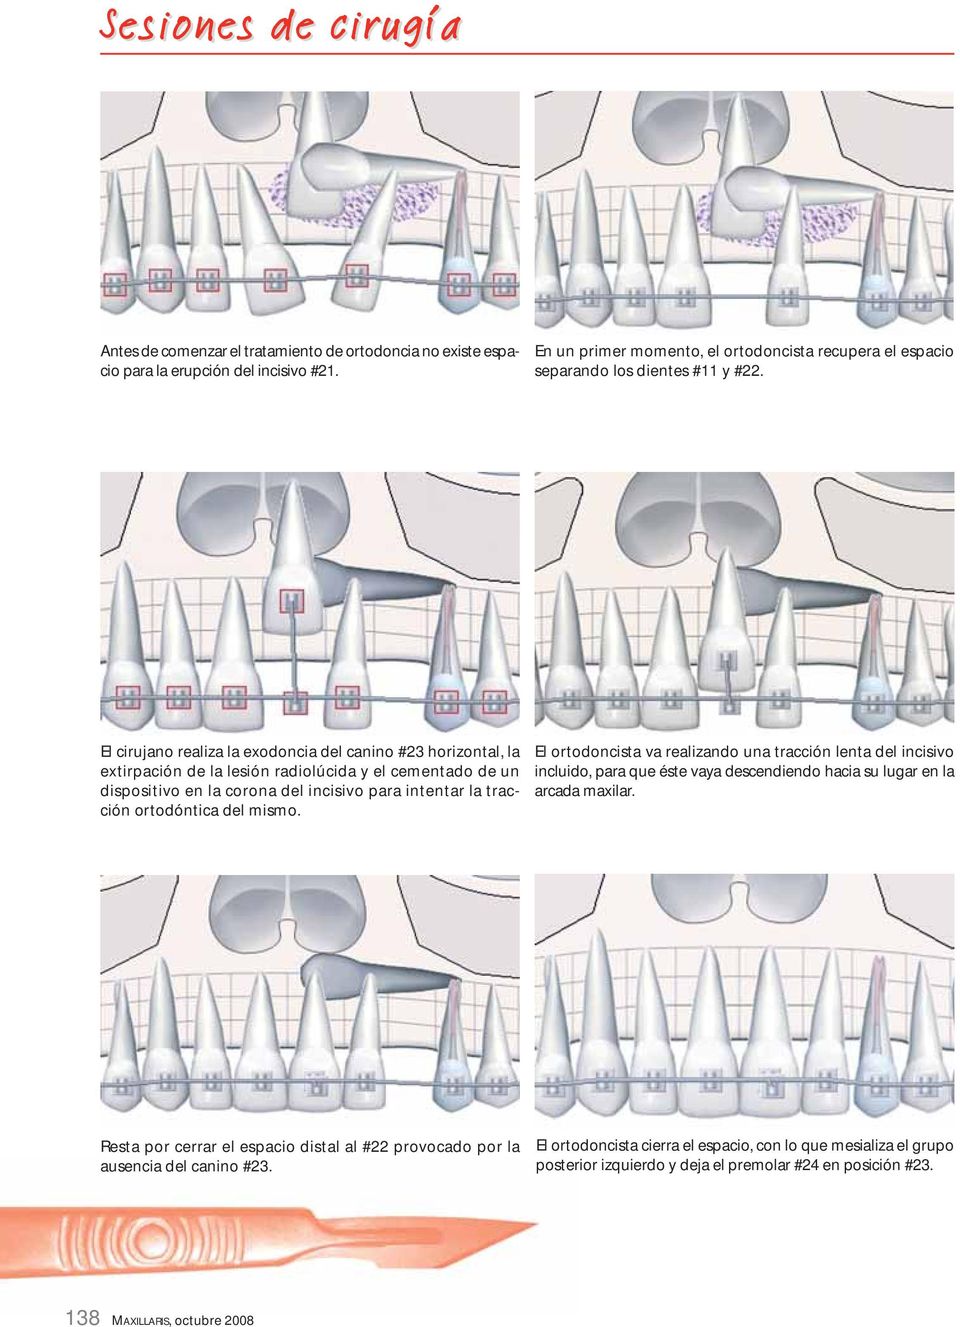 ortodóntica del mismo. El ortodoncista va realizando una tracción lenta del incisivo incluido, para que éste vaya descendiendo hacia su lugar en la arcada maxilar.